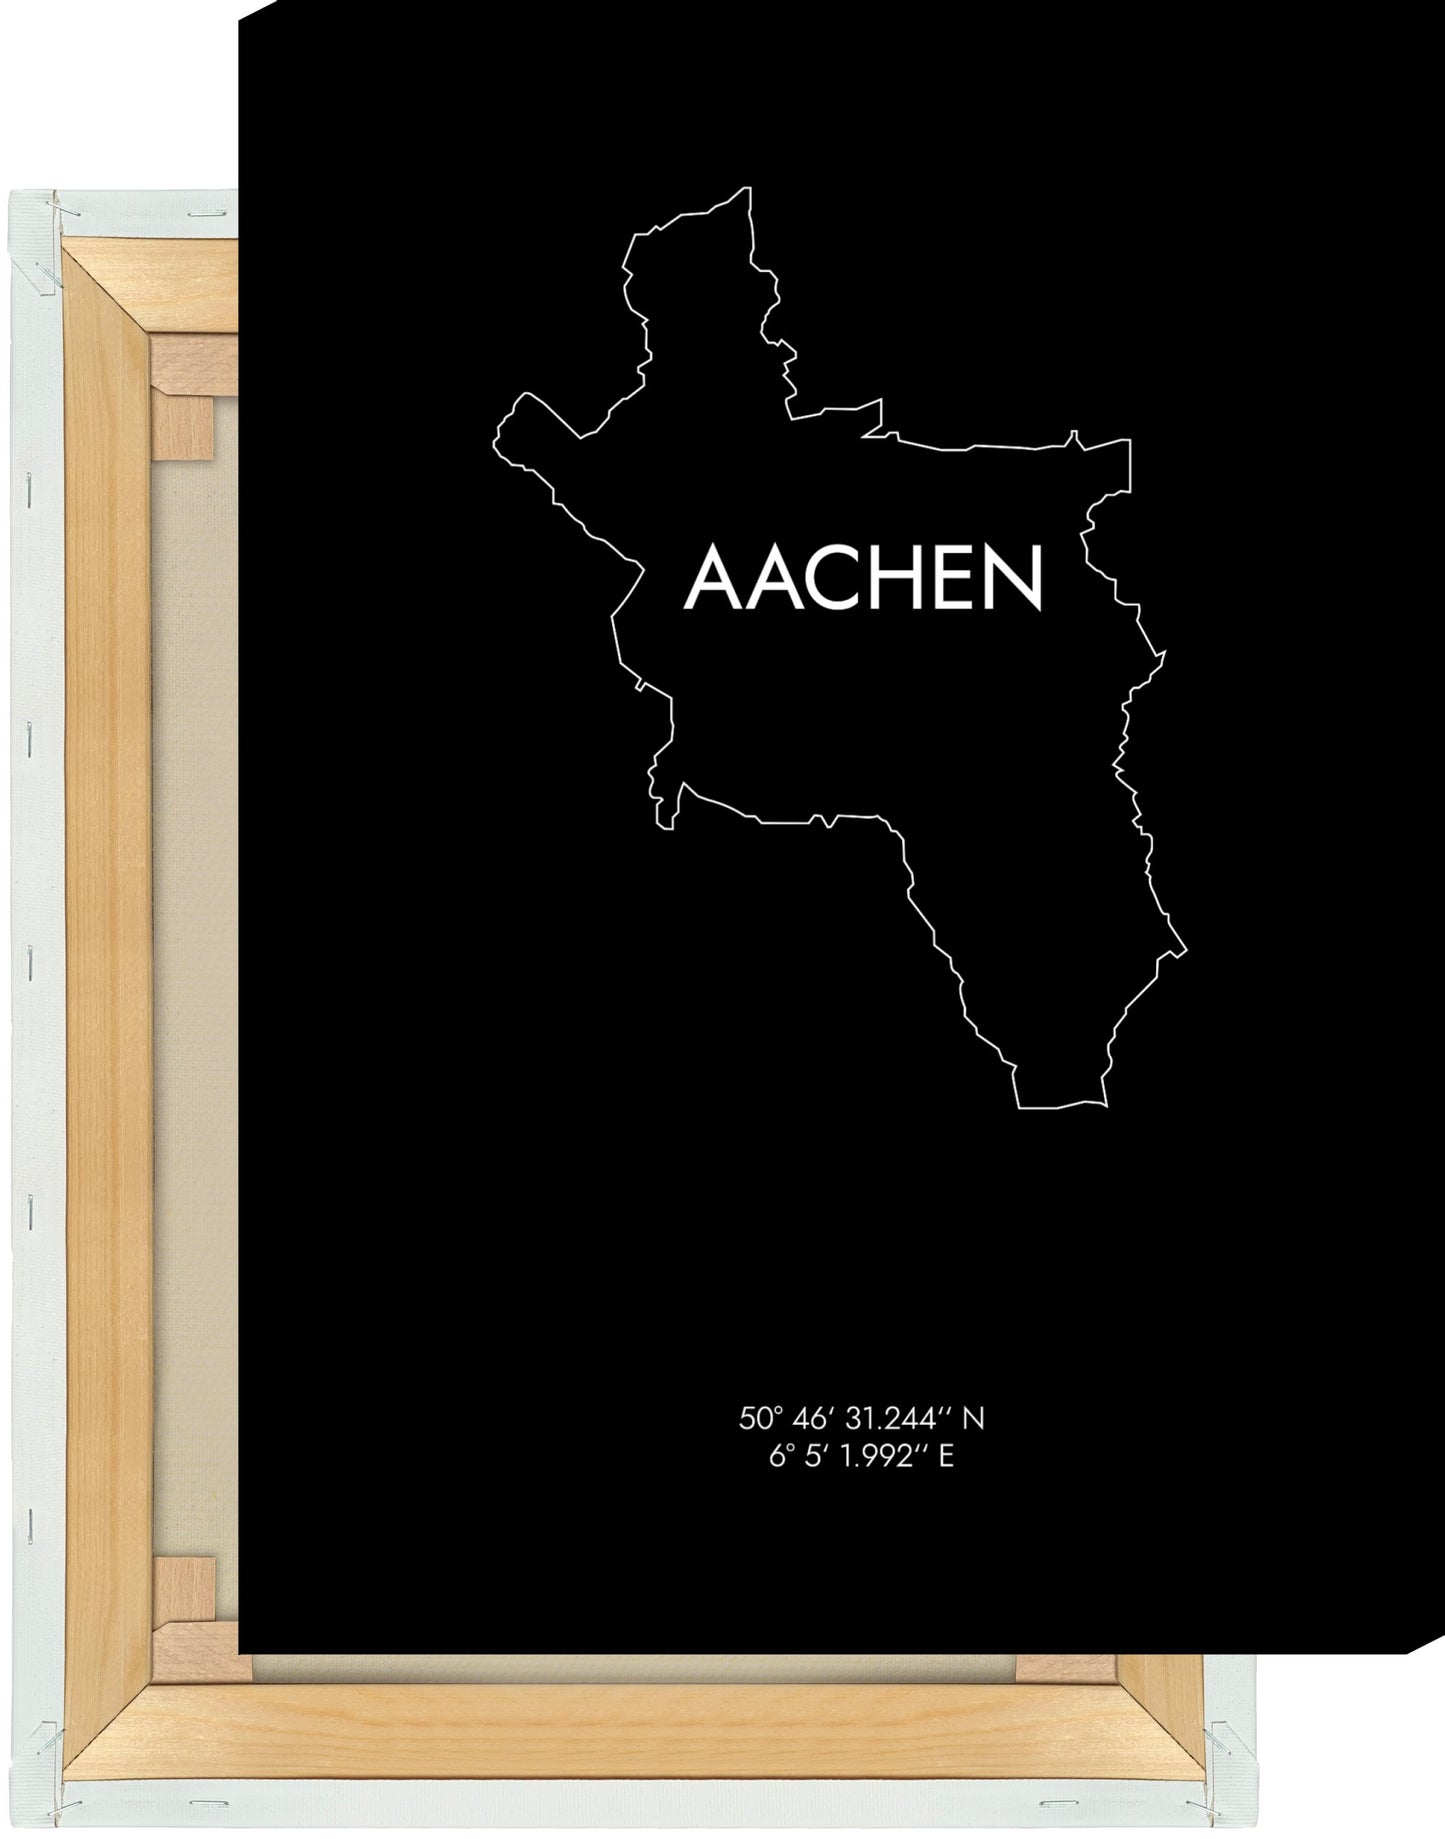 Leinwand Aachen Koordinaten #8